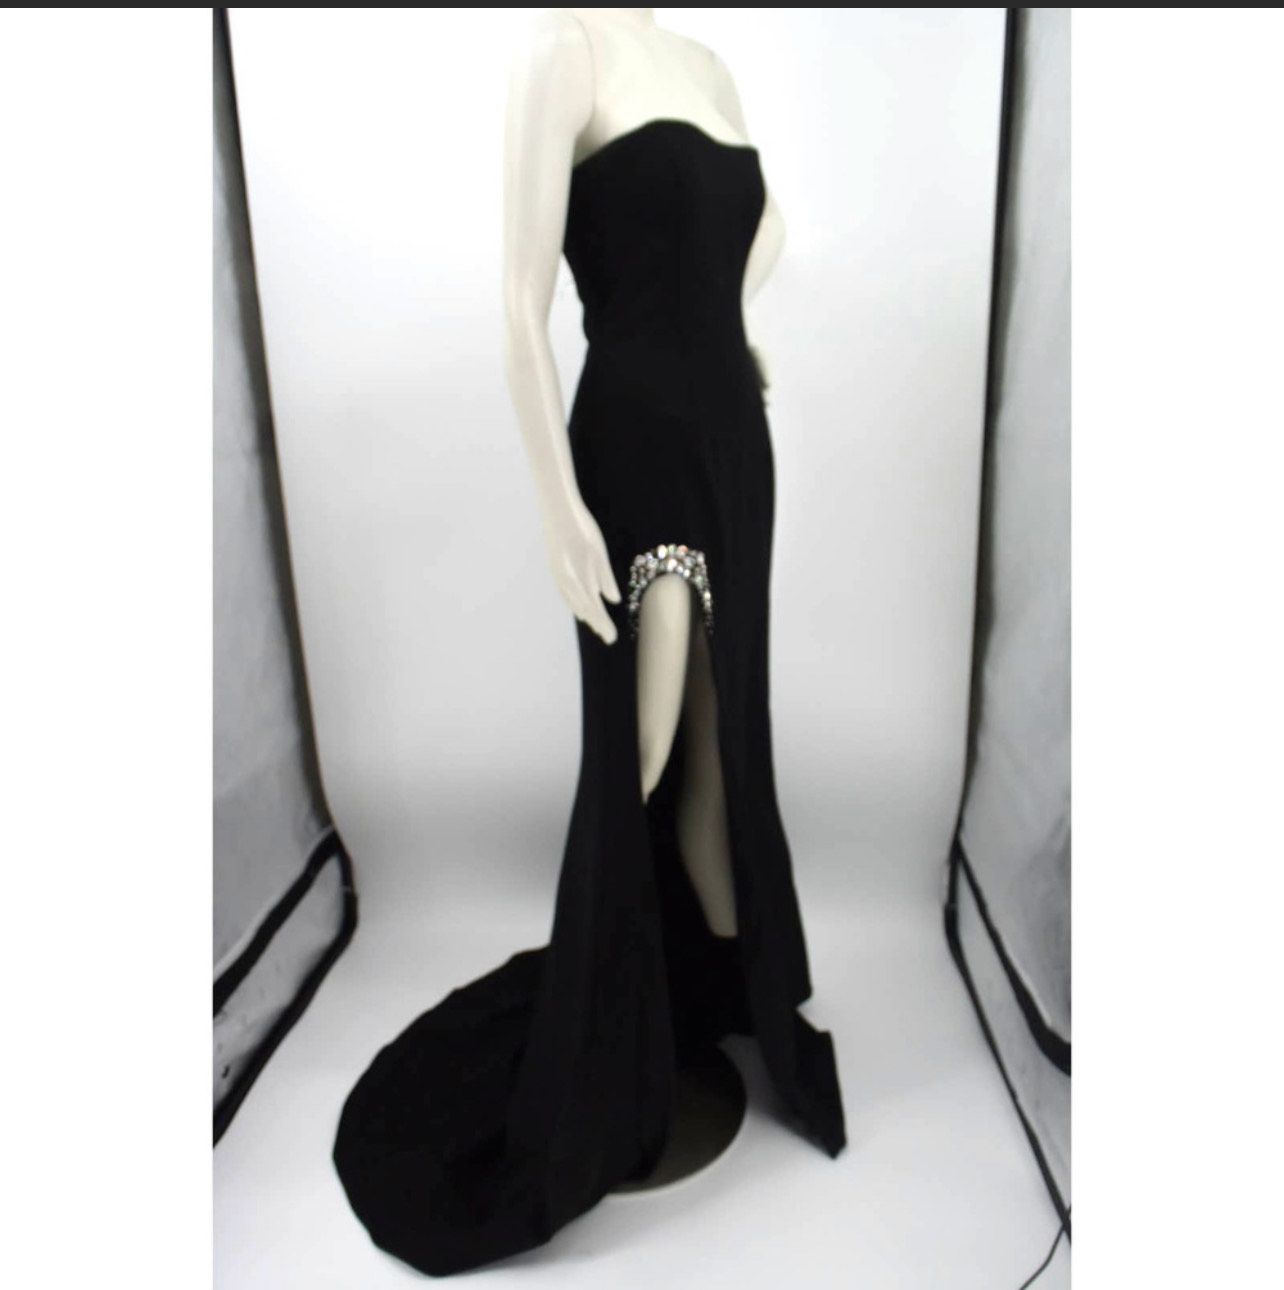 Sherri Hill Size 6 Prom Strapless Velvet Black Side Slit Dress on Queenly